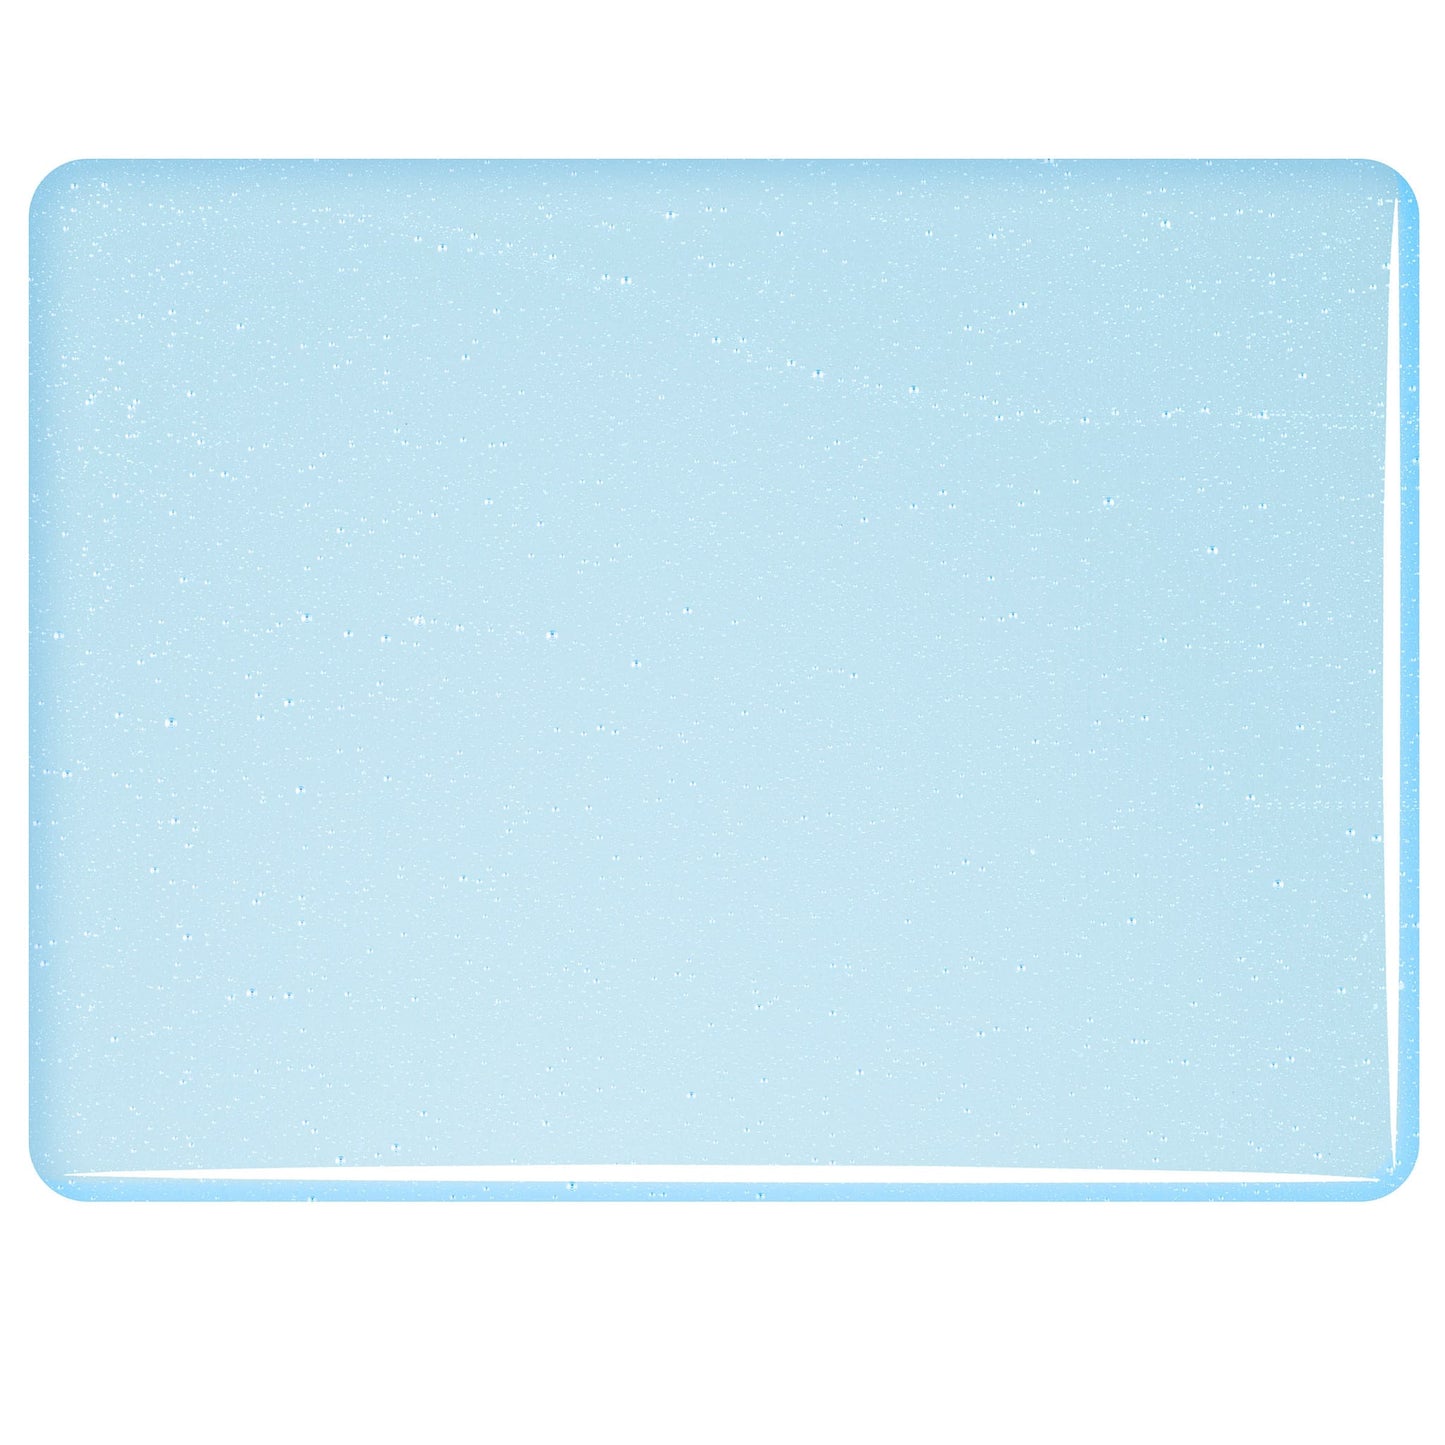 Bullseye COE90 Fusing Glass 001816 Turquoise Blue Tint Full Sheet